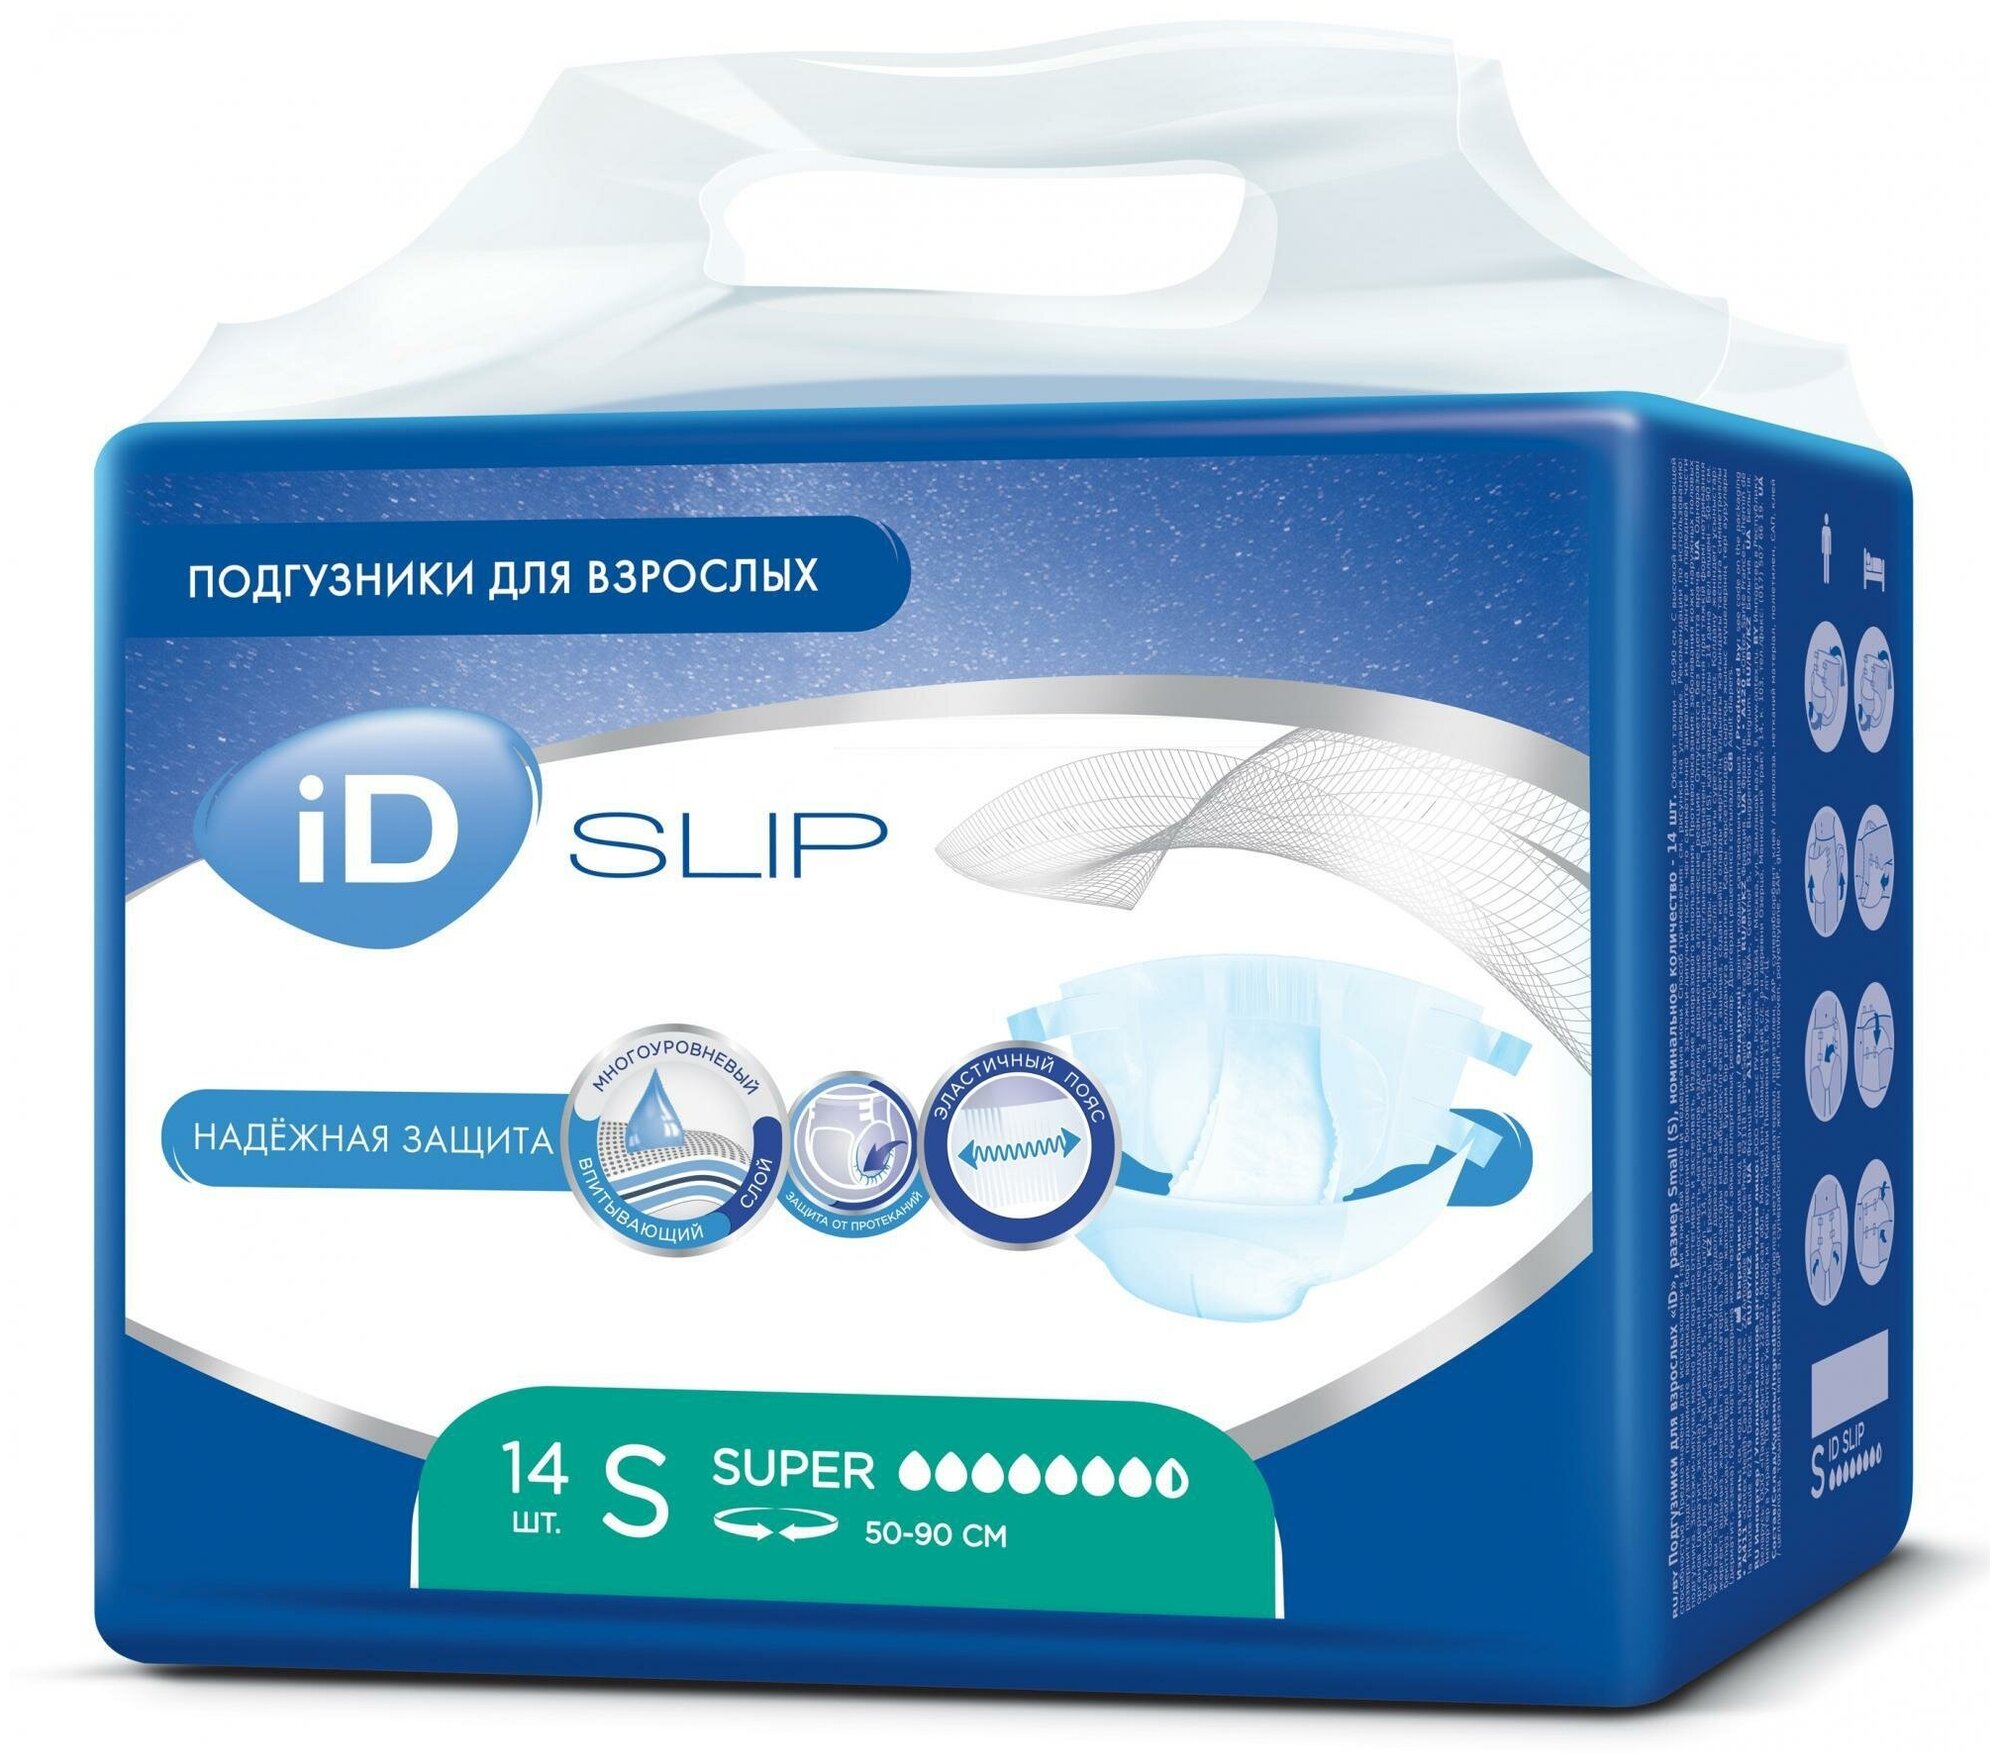 Подгузники для взрослых iD Slip, размер S, 14 шт 2326054